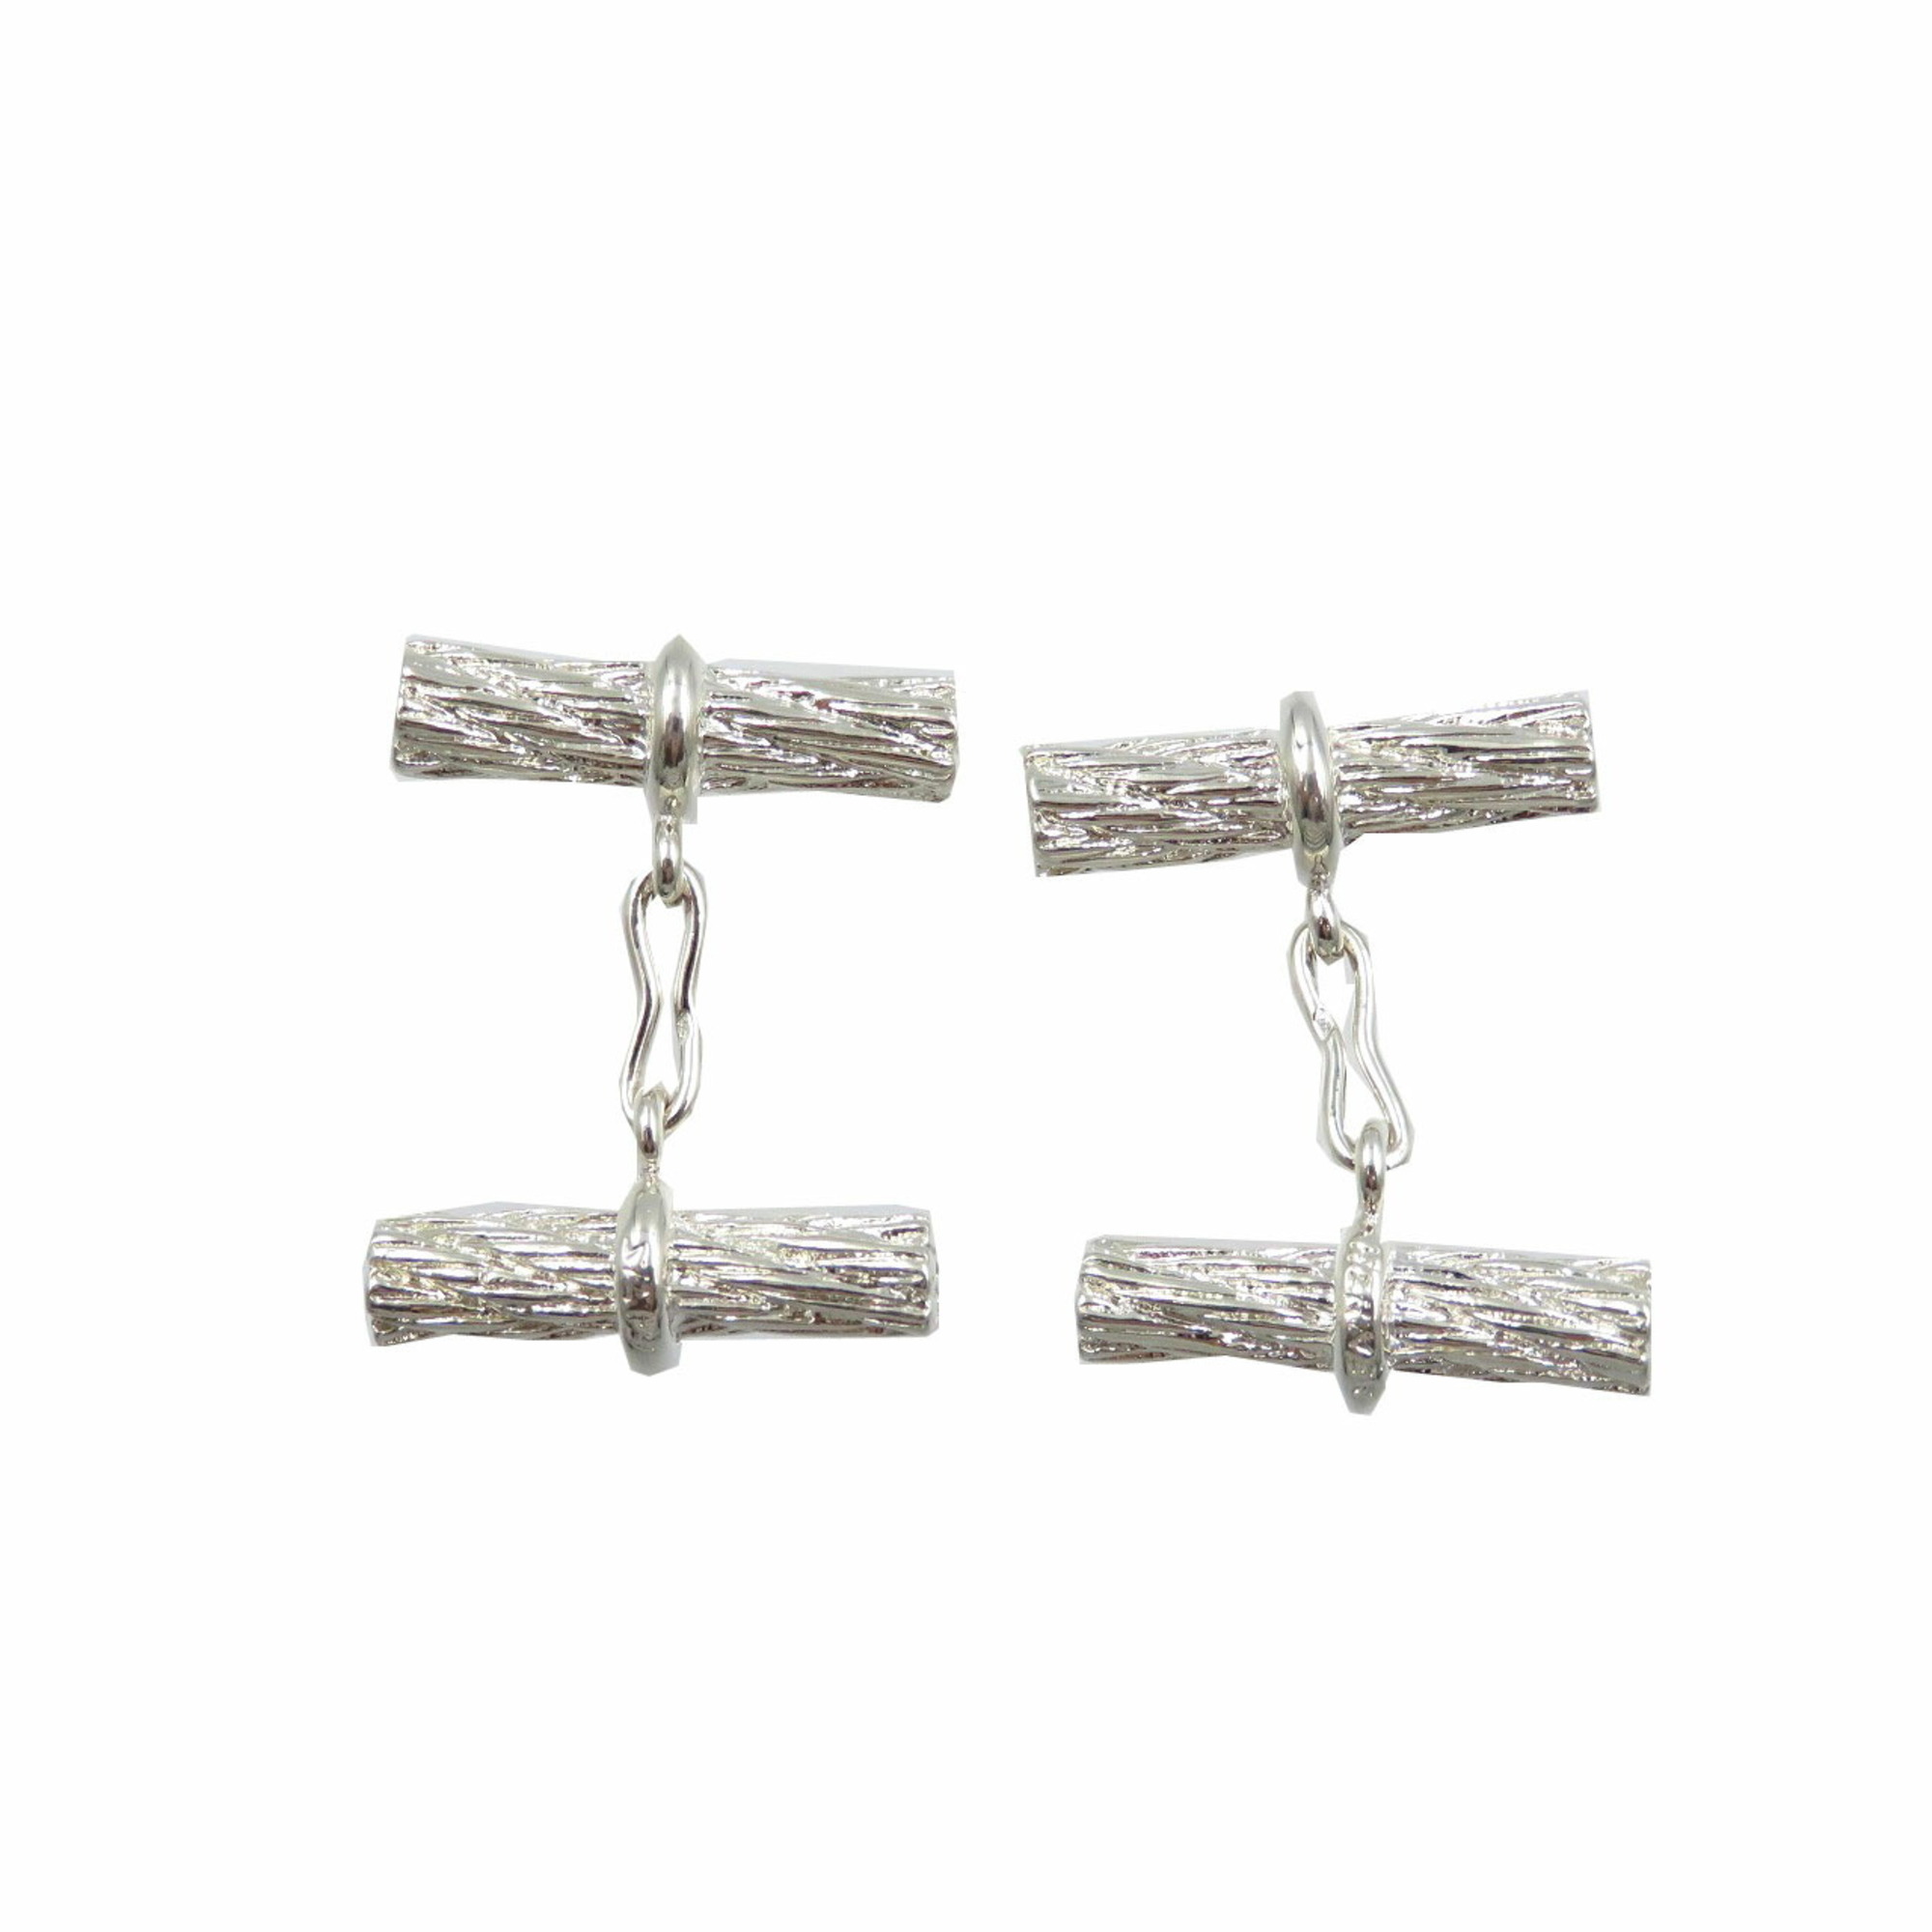 Hermes Rope Motif Silver 925 Cufflinks Unisex 0047 HERMES